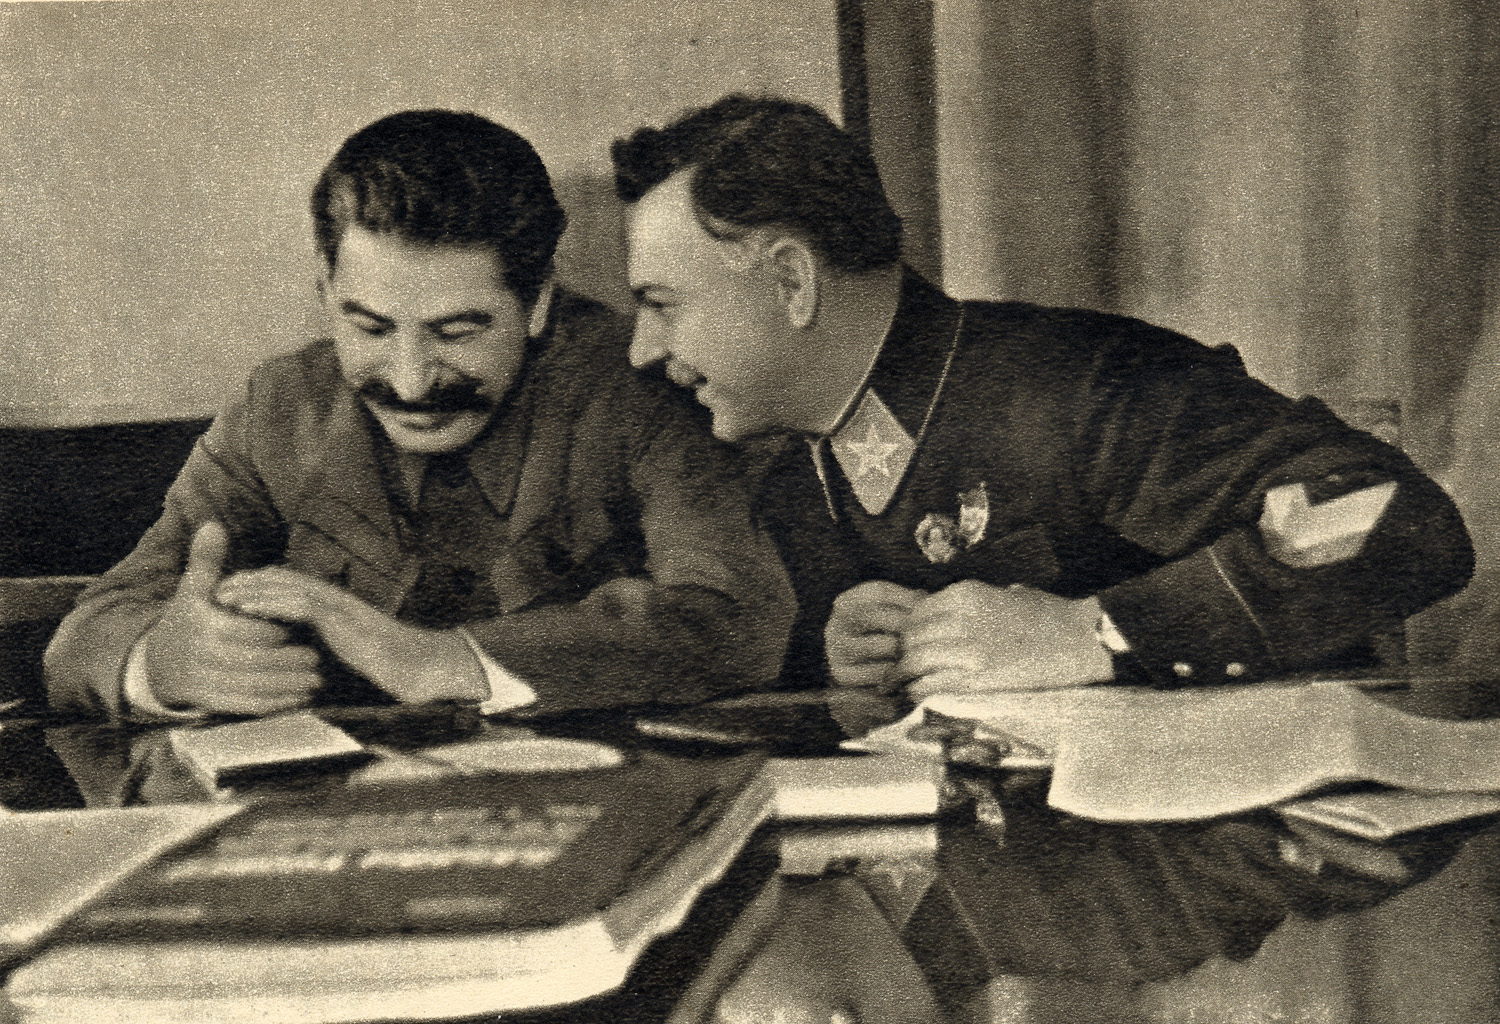 Joseph_Stalin_and_Kliment_Voroshilov,_1935